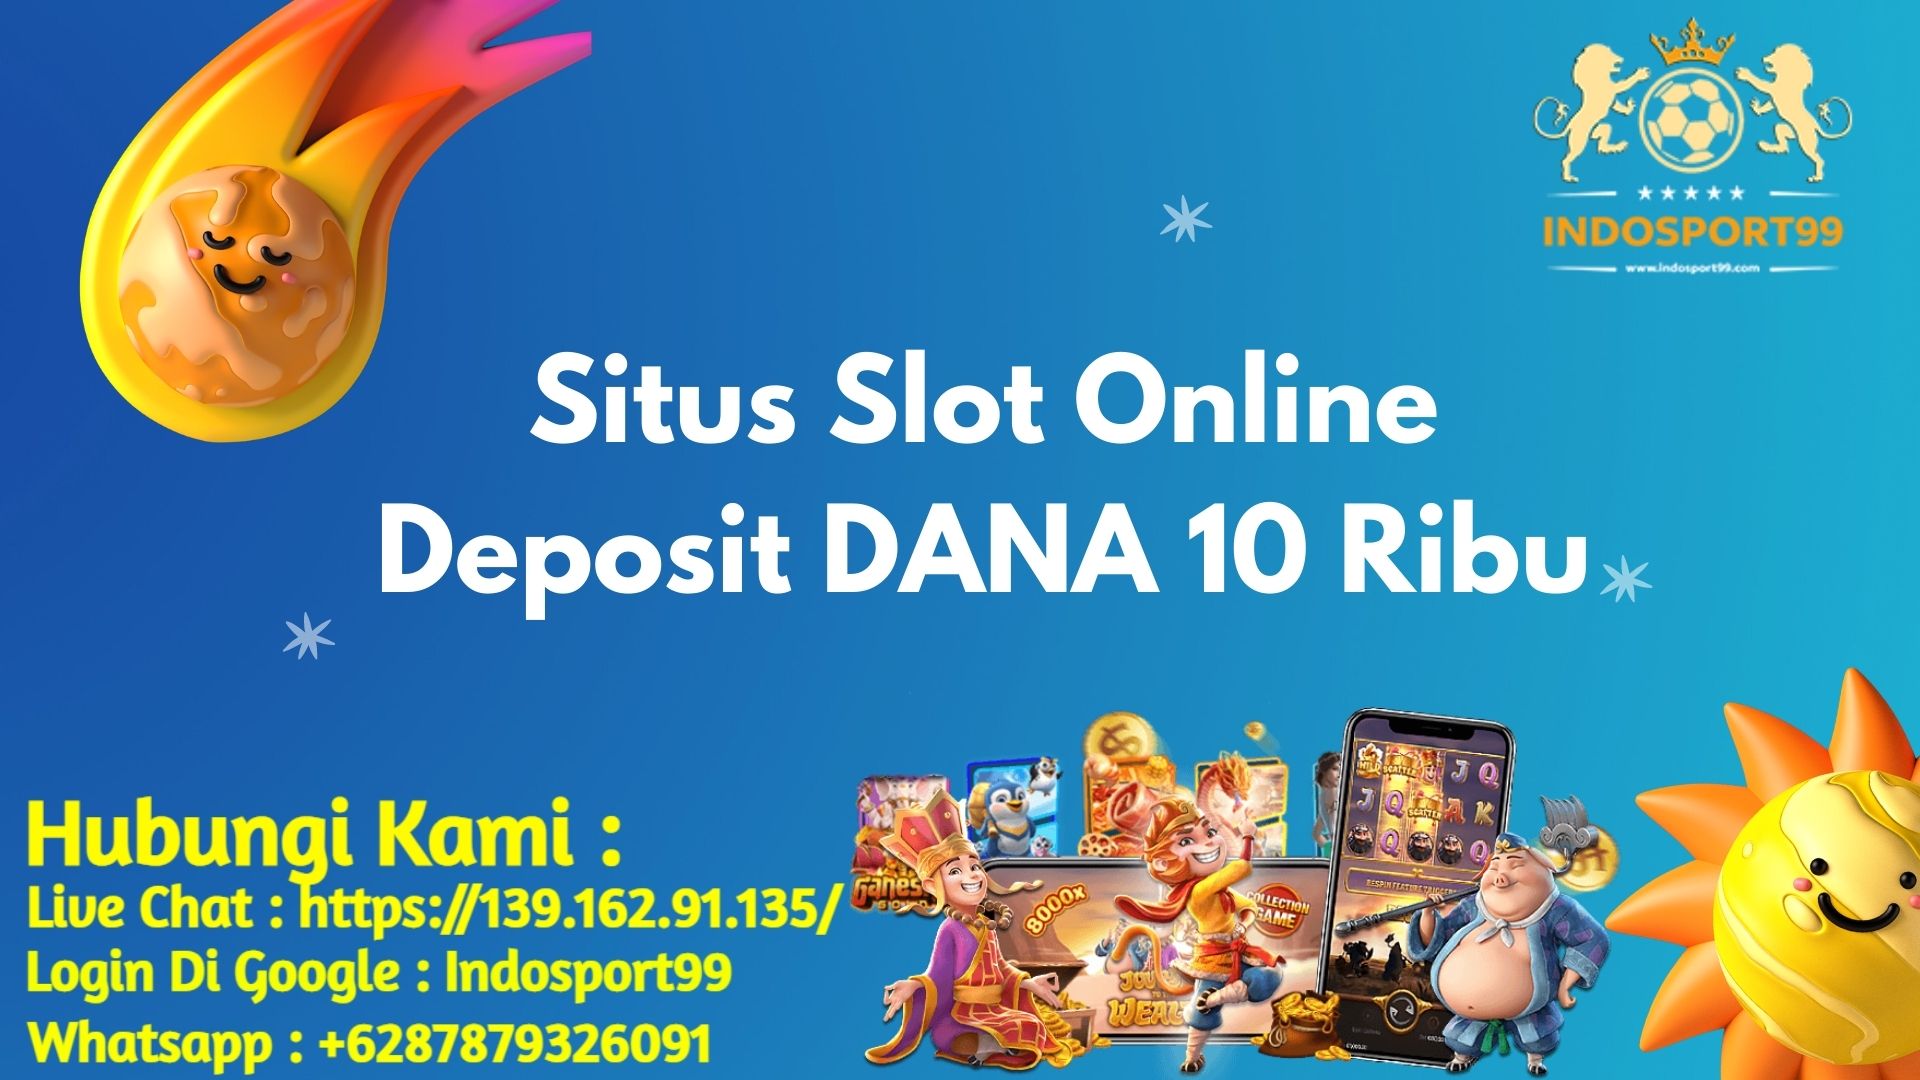 Situs Slot Online Deposit DANA 10 Ribu